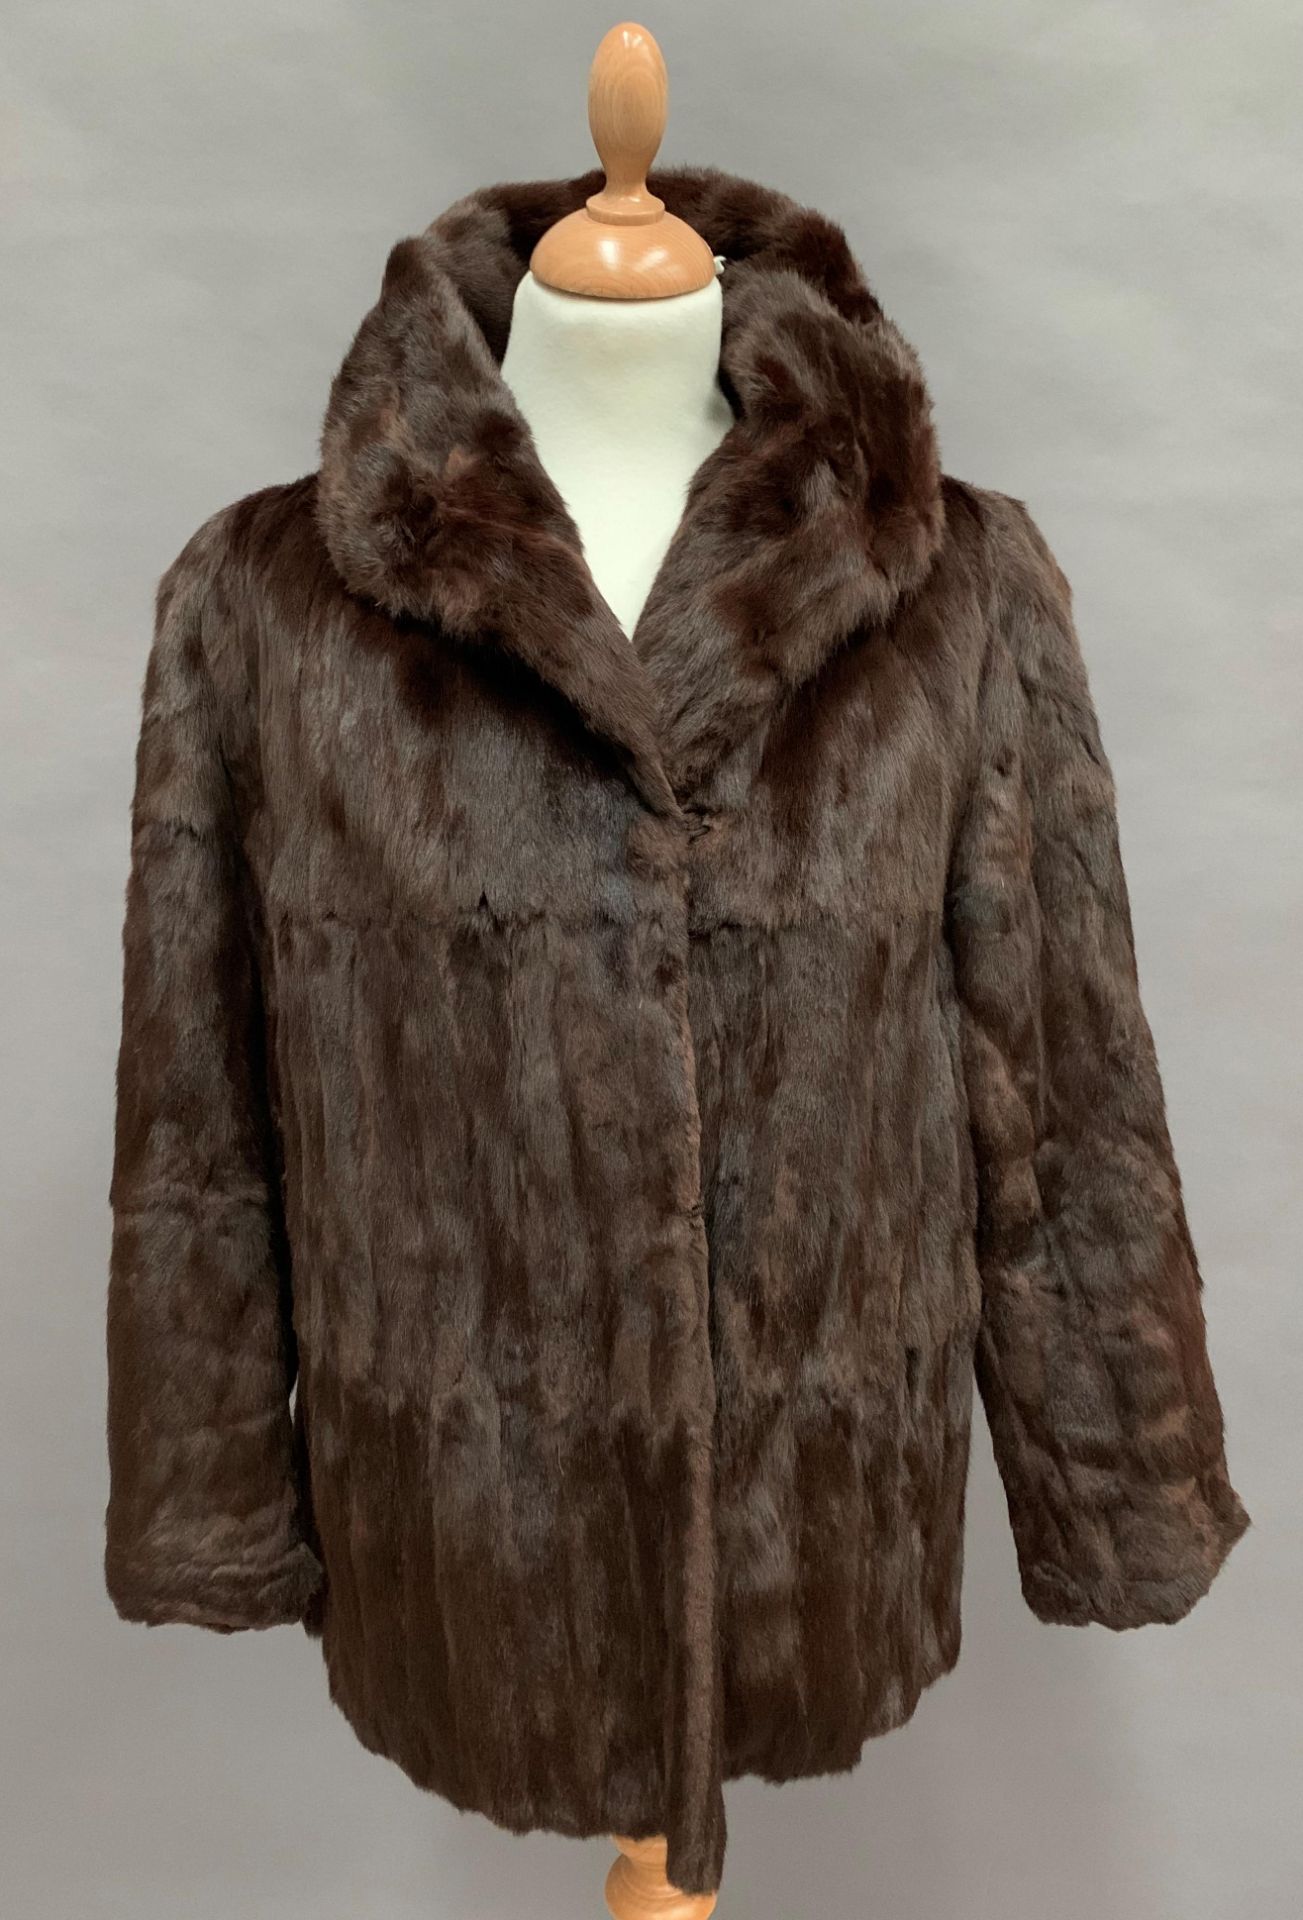 Lady's fur jacket